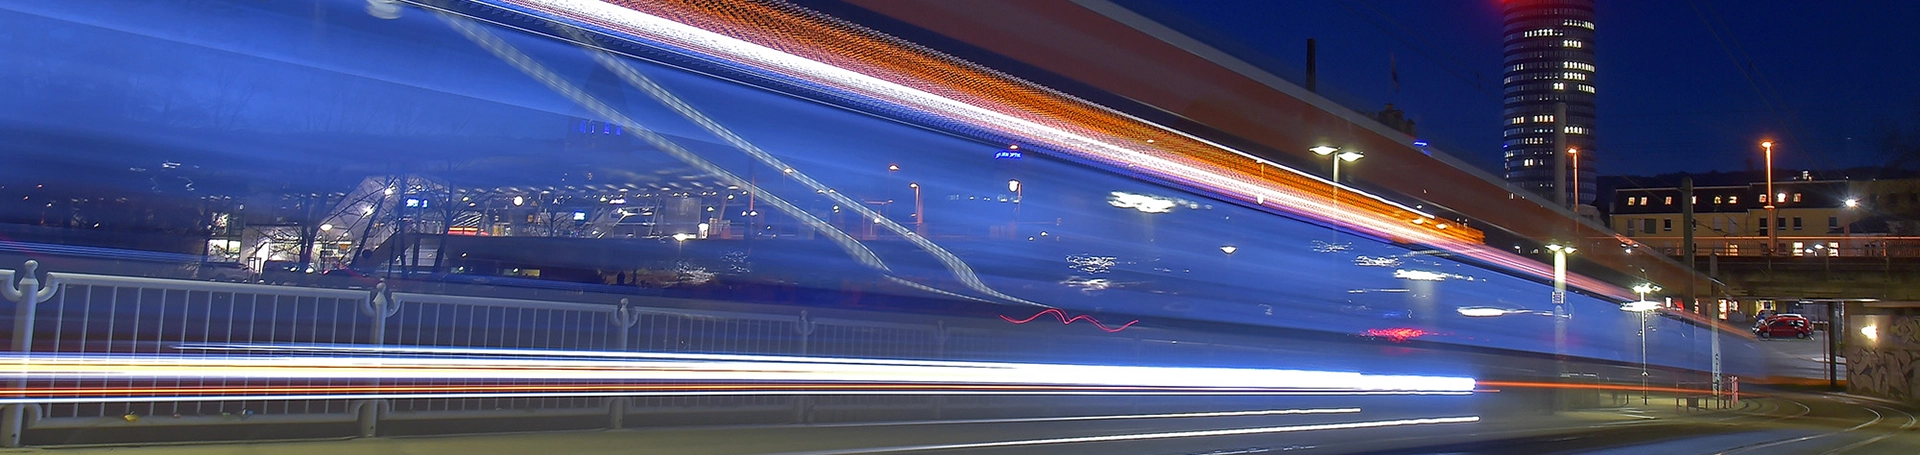 Symbolbild vorbeifahrende Straßenbahn mit Lichtschweif